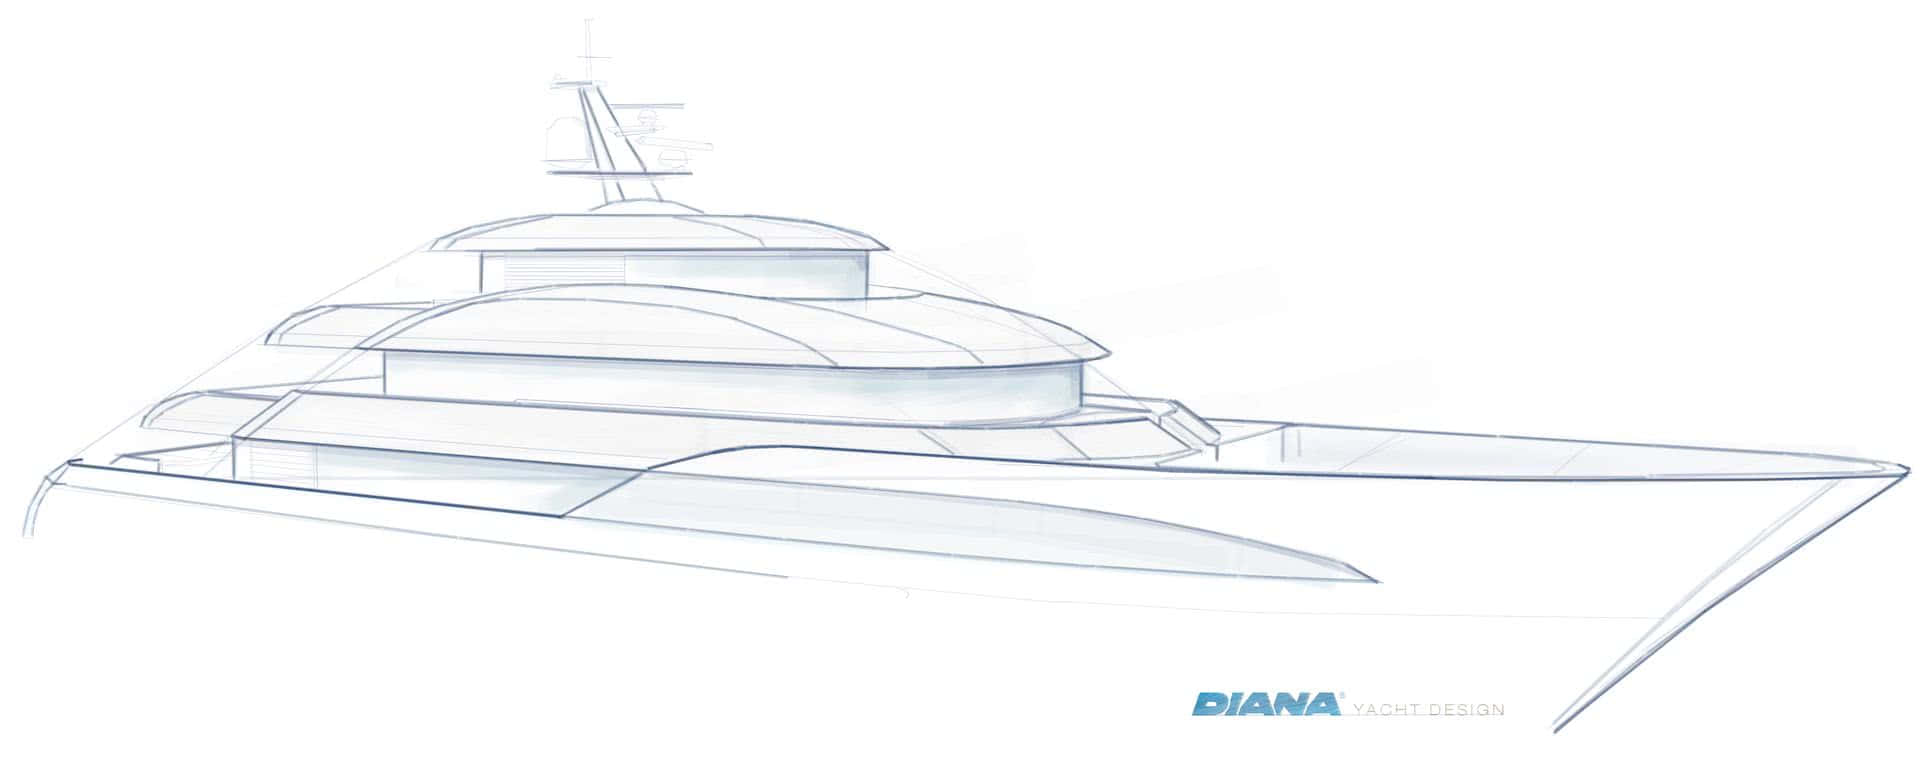 Bluebird Diana Yacht Design